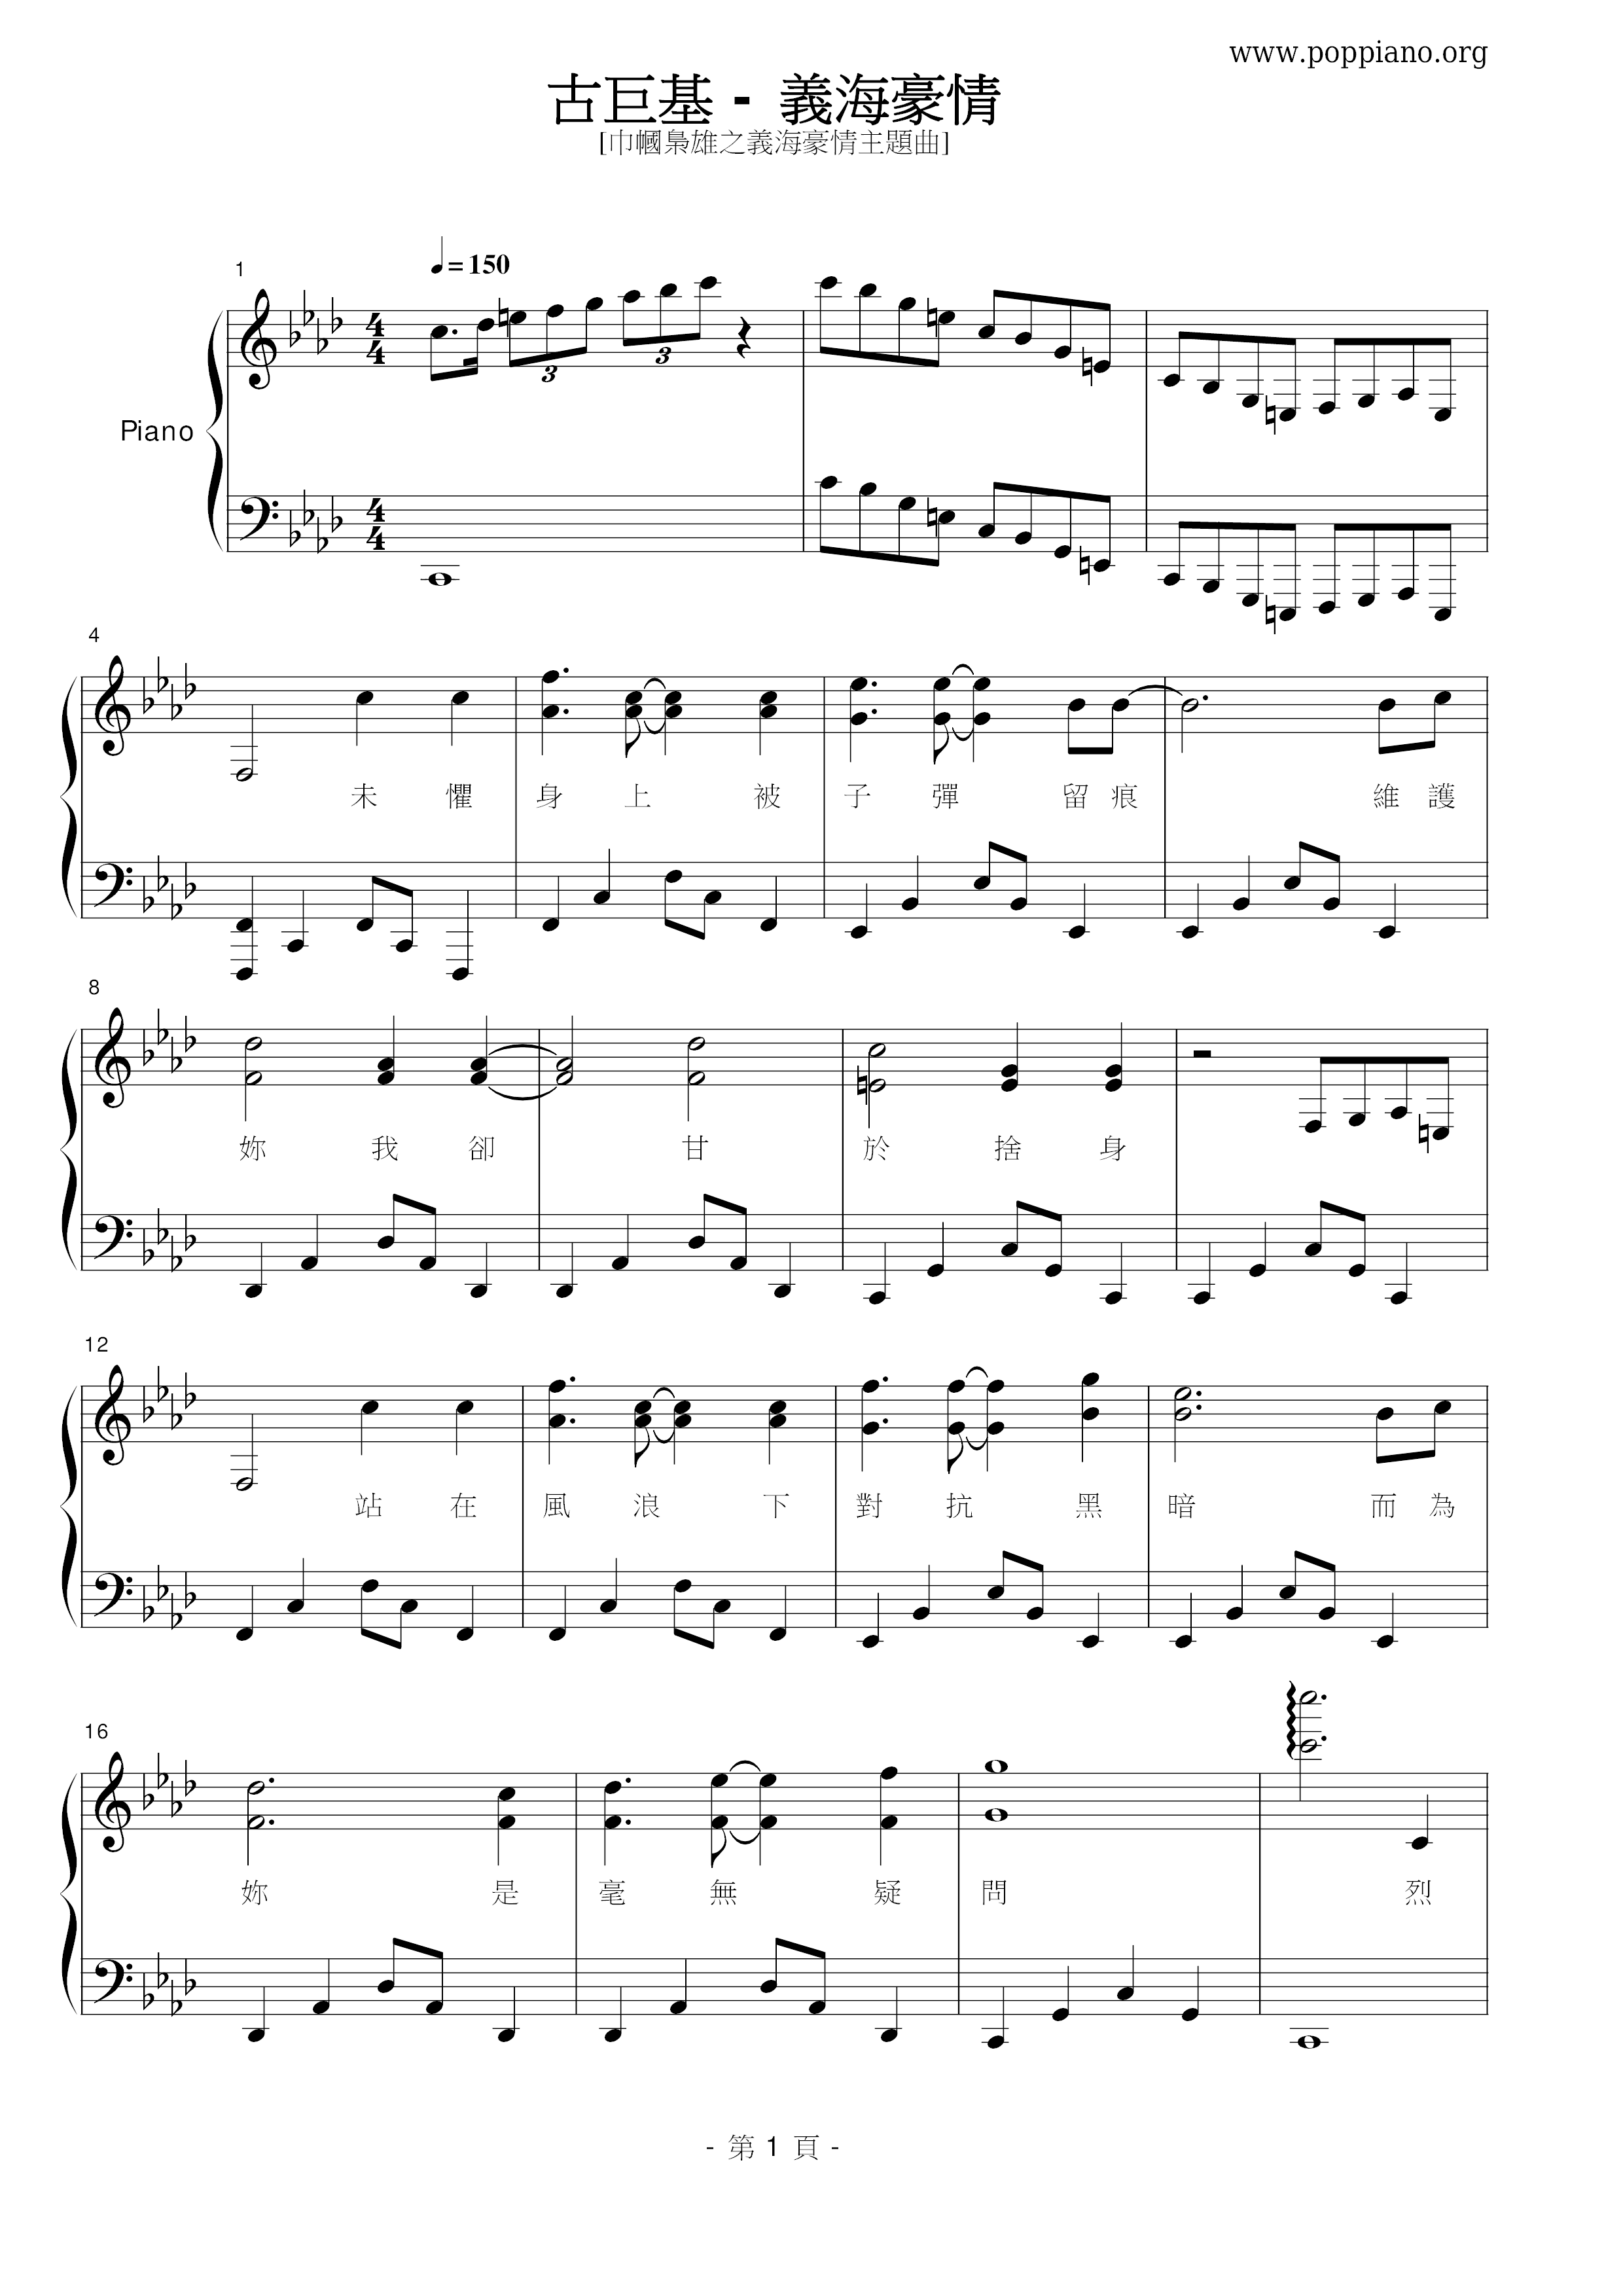 Yi Hai Hao Qing Score